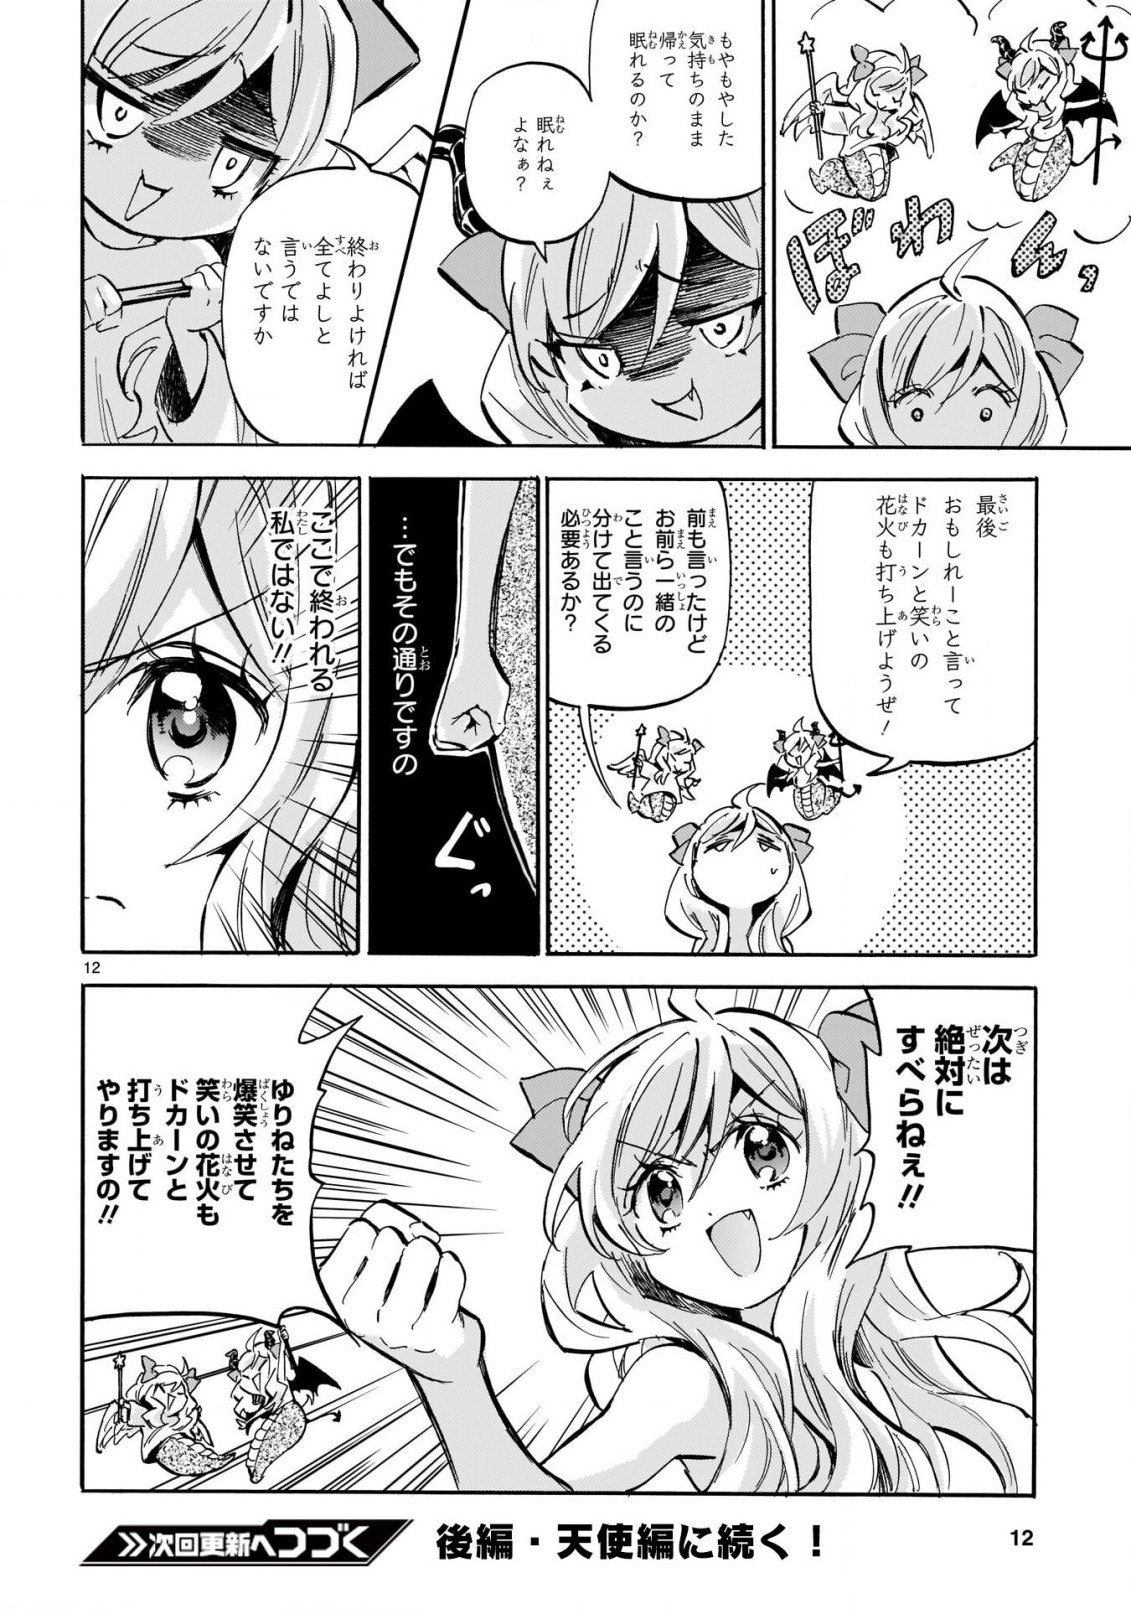 Jashin-chan Dropkick - Chapter 200 - Page 12